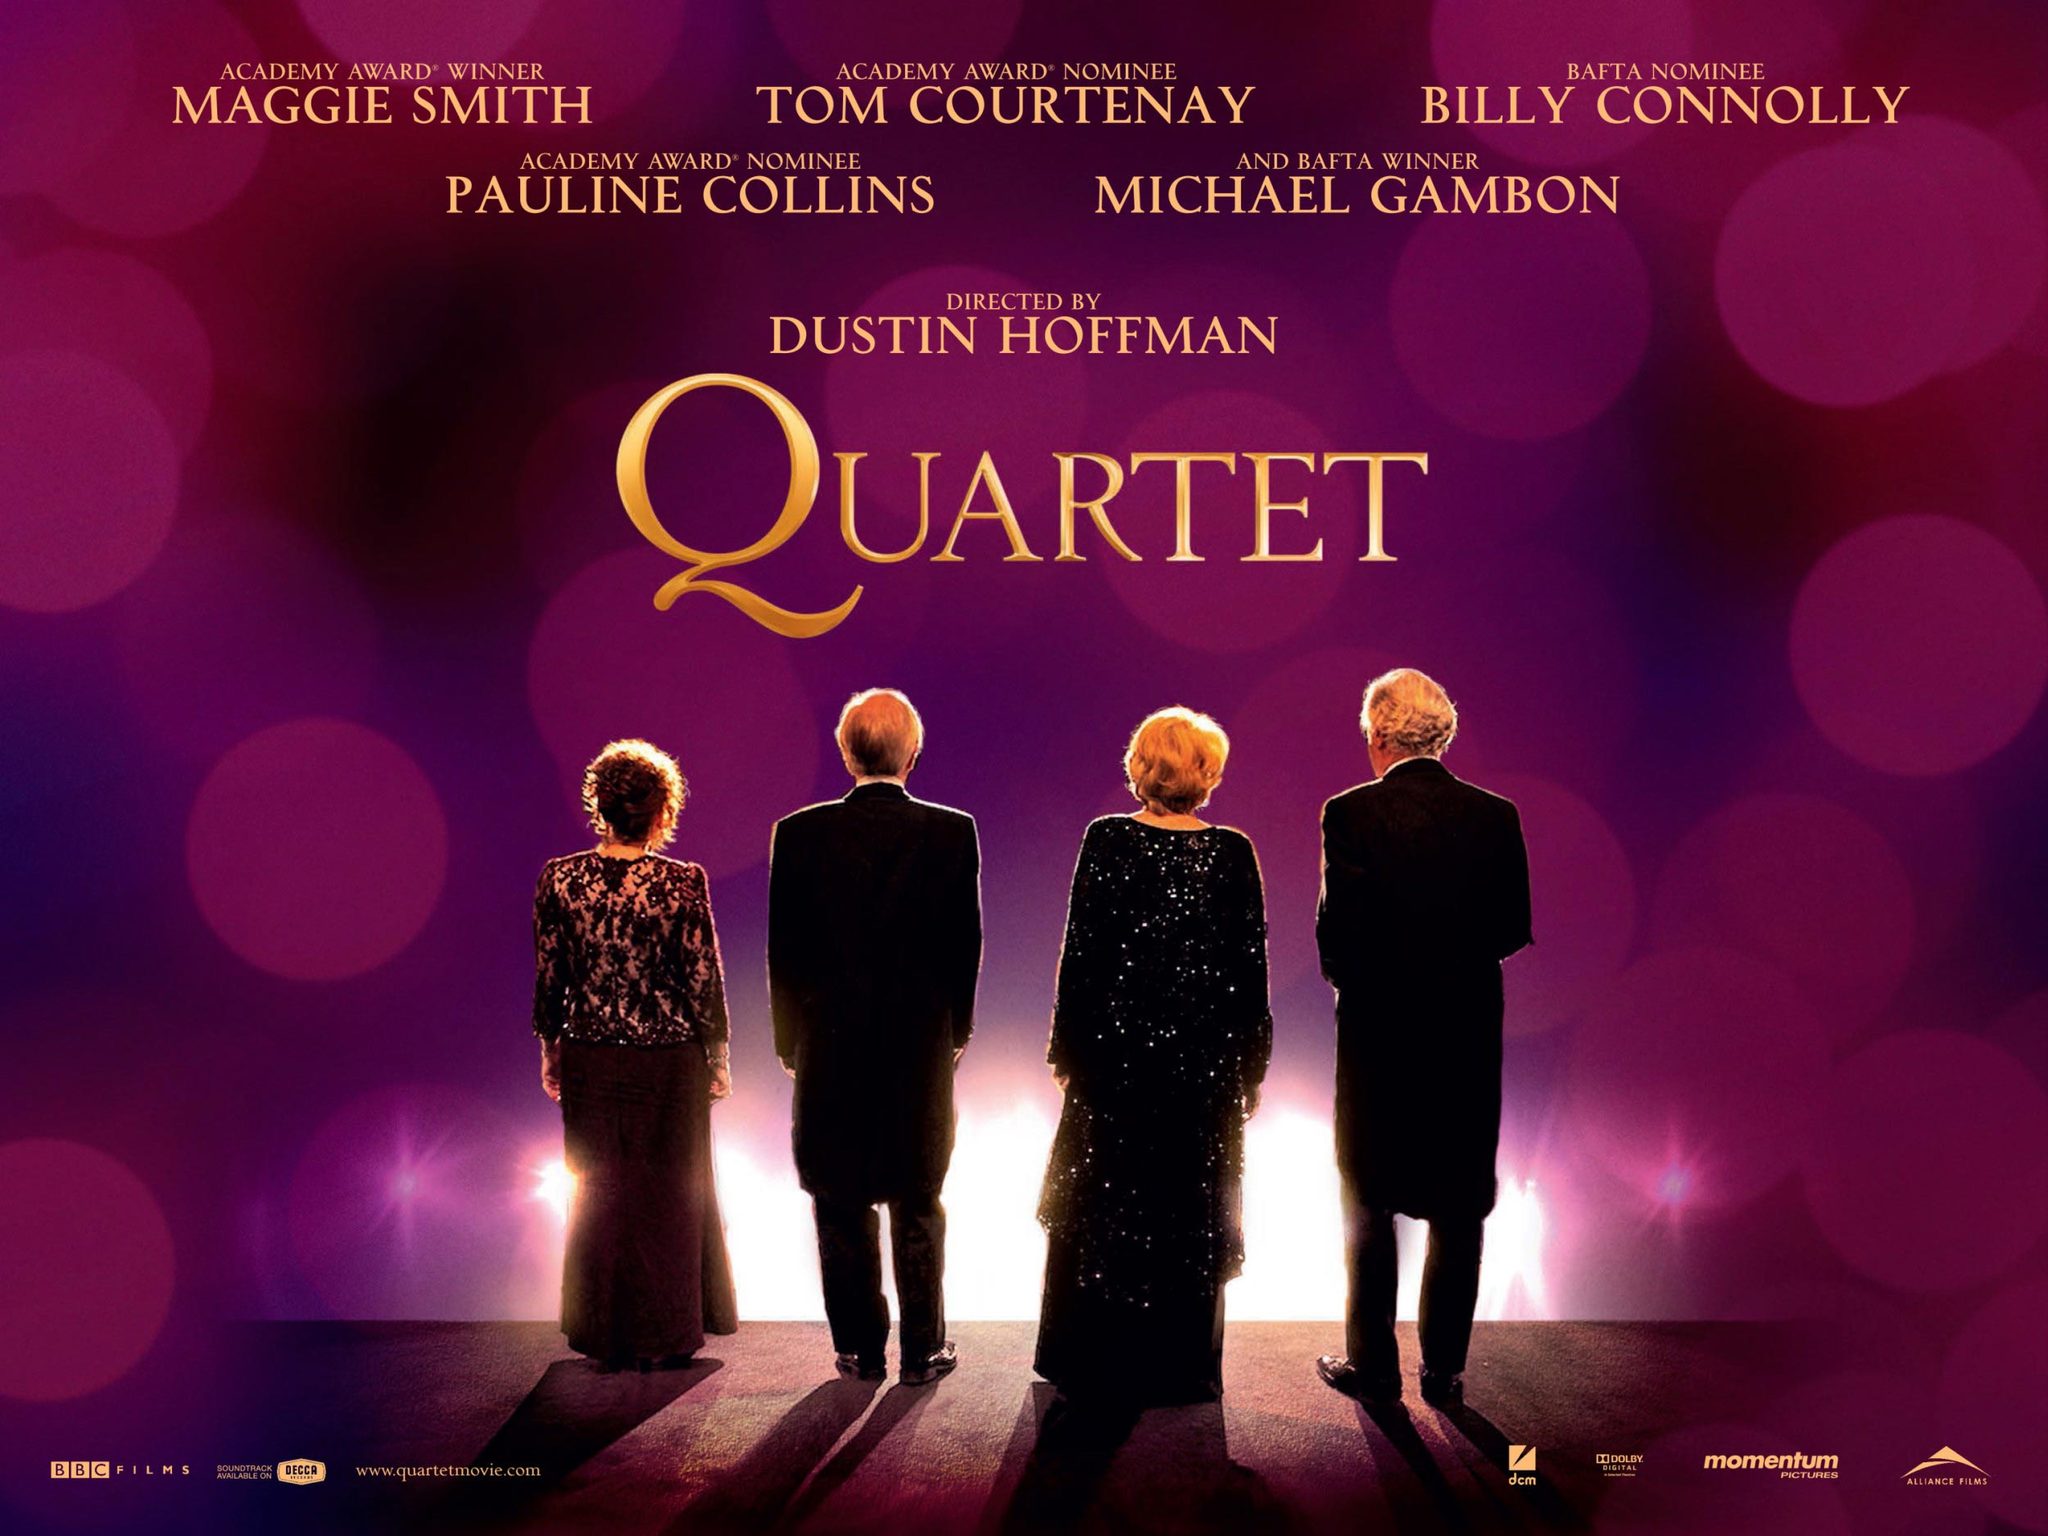 http://www.heyuguys.co.uk/images/2012/11/Quartet-Poster.jpg